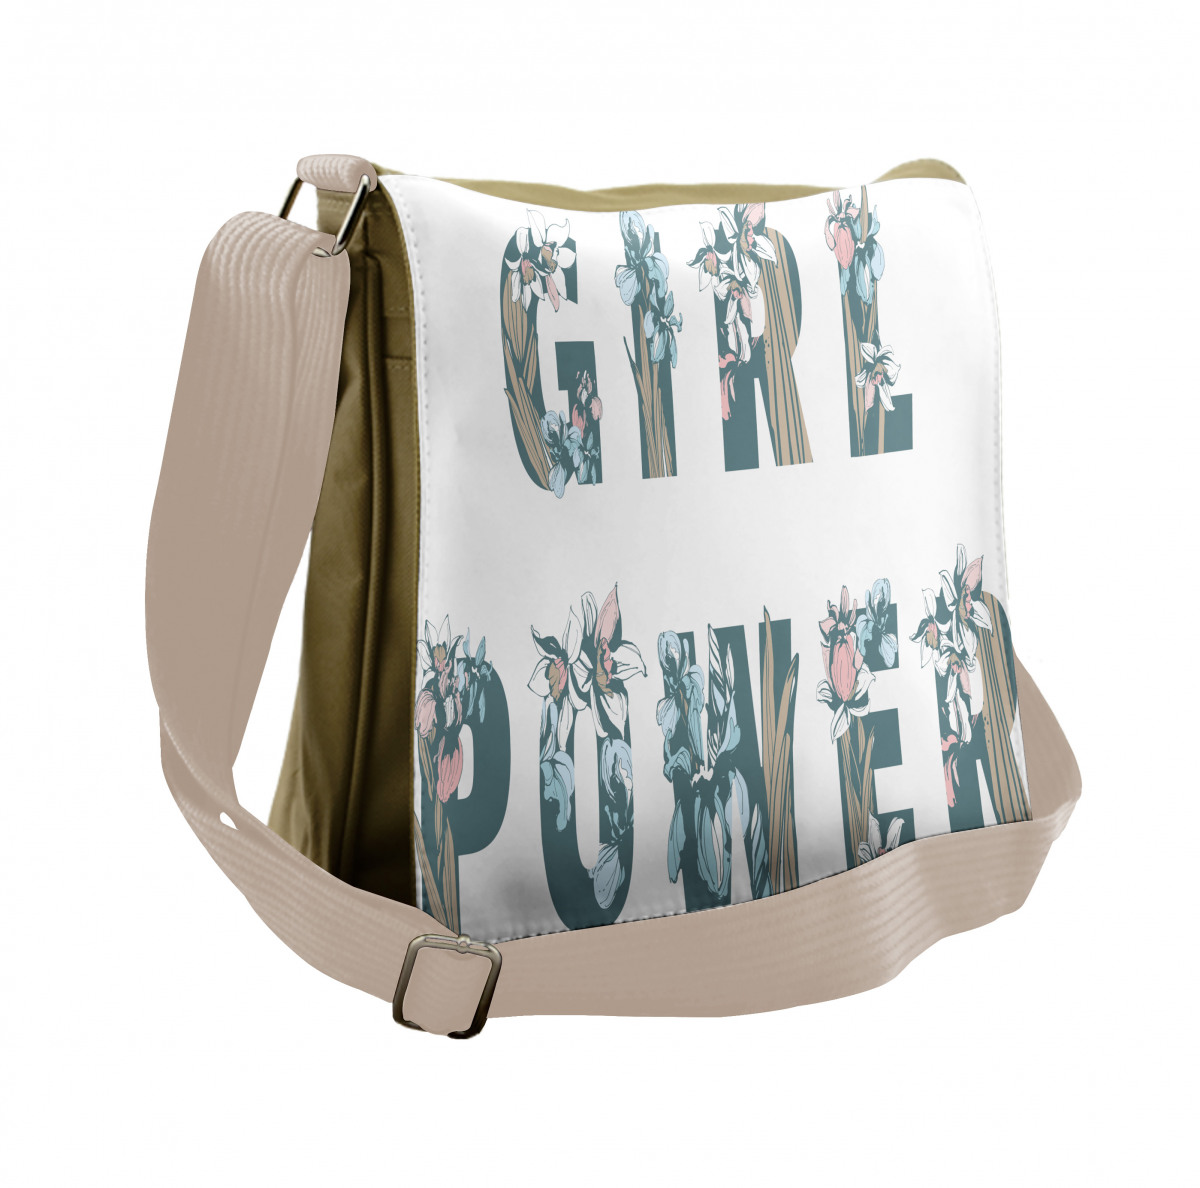 Girl's Floral Shoulder Bag